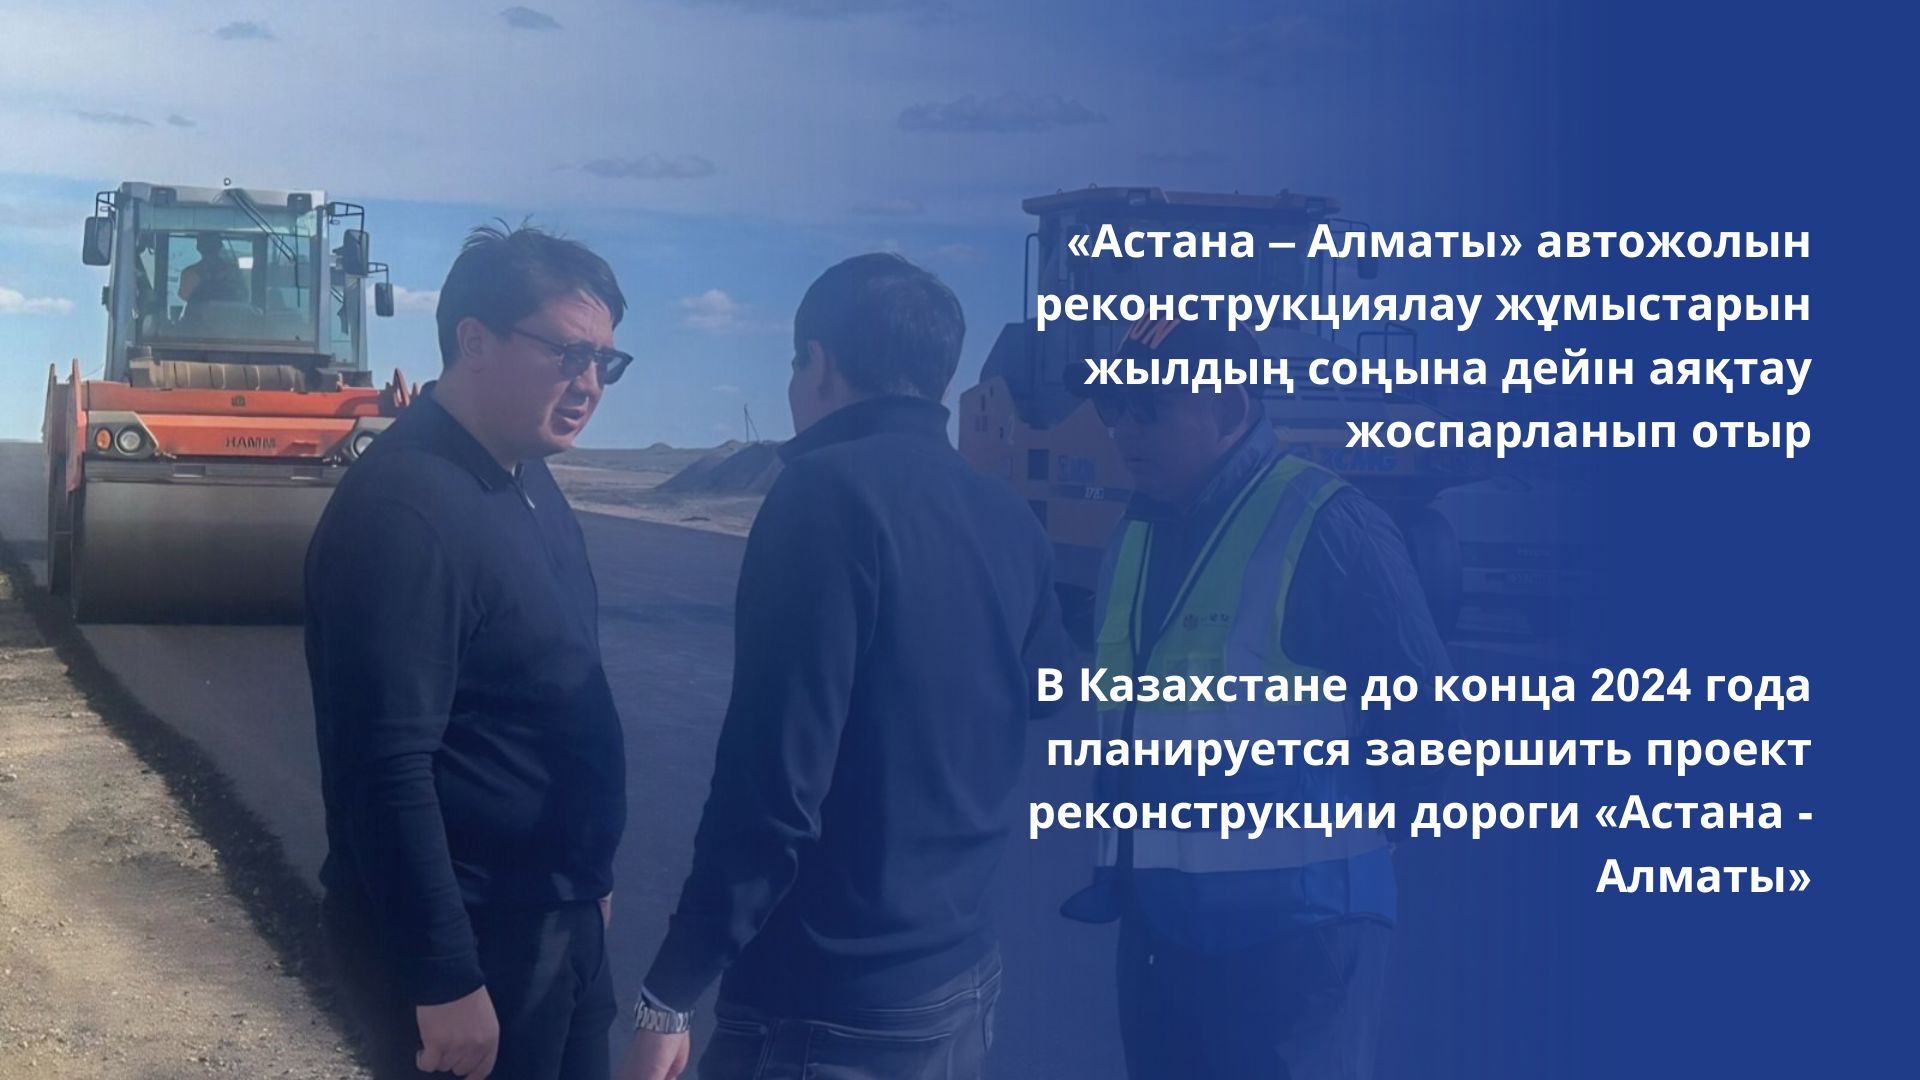 «Астана – Алматы» автожолын реконструкциялау жұмыстарын жылдың соңына дейін аяқтау жоспарланып отыр